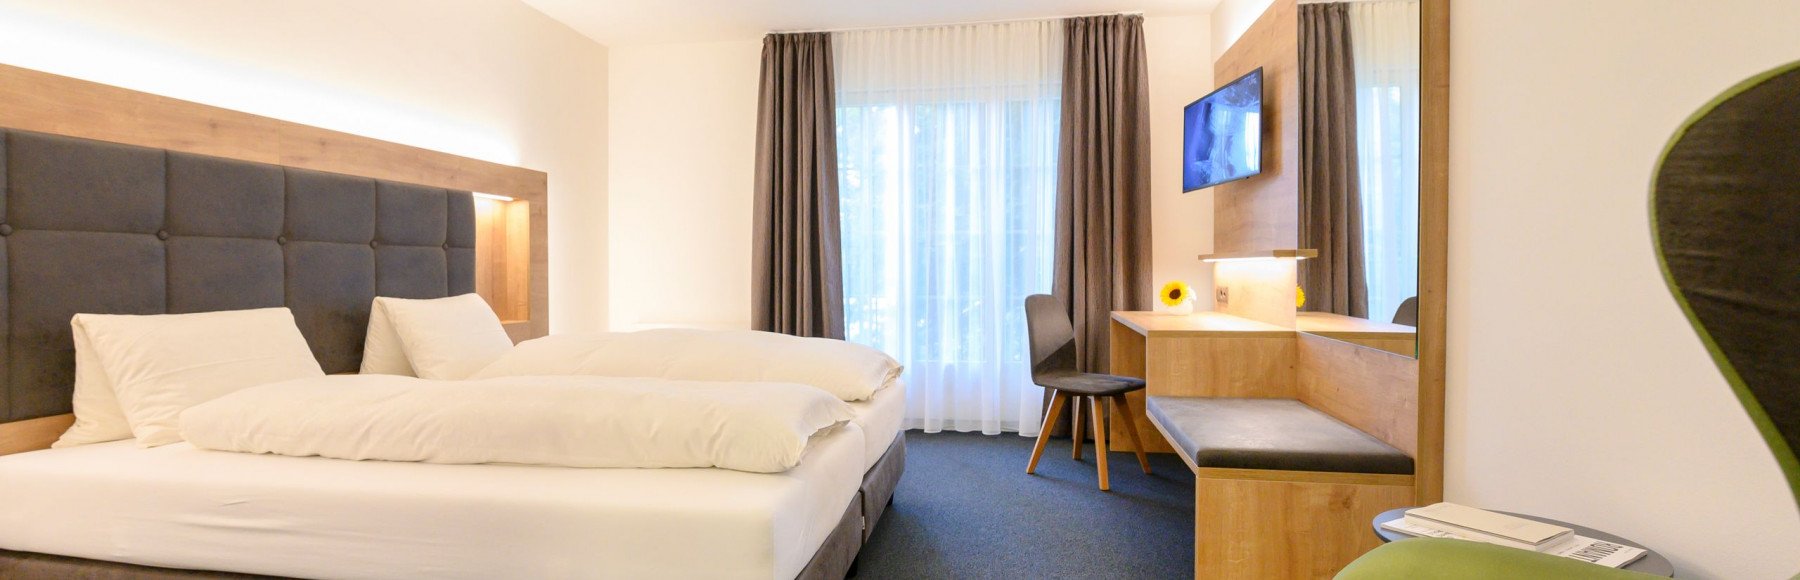 Zimmer im Romantik Hotel Sternen in Kriegstetten bei Solothurn